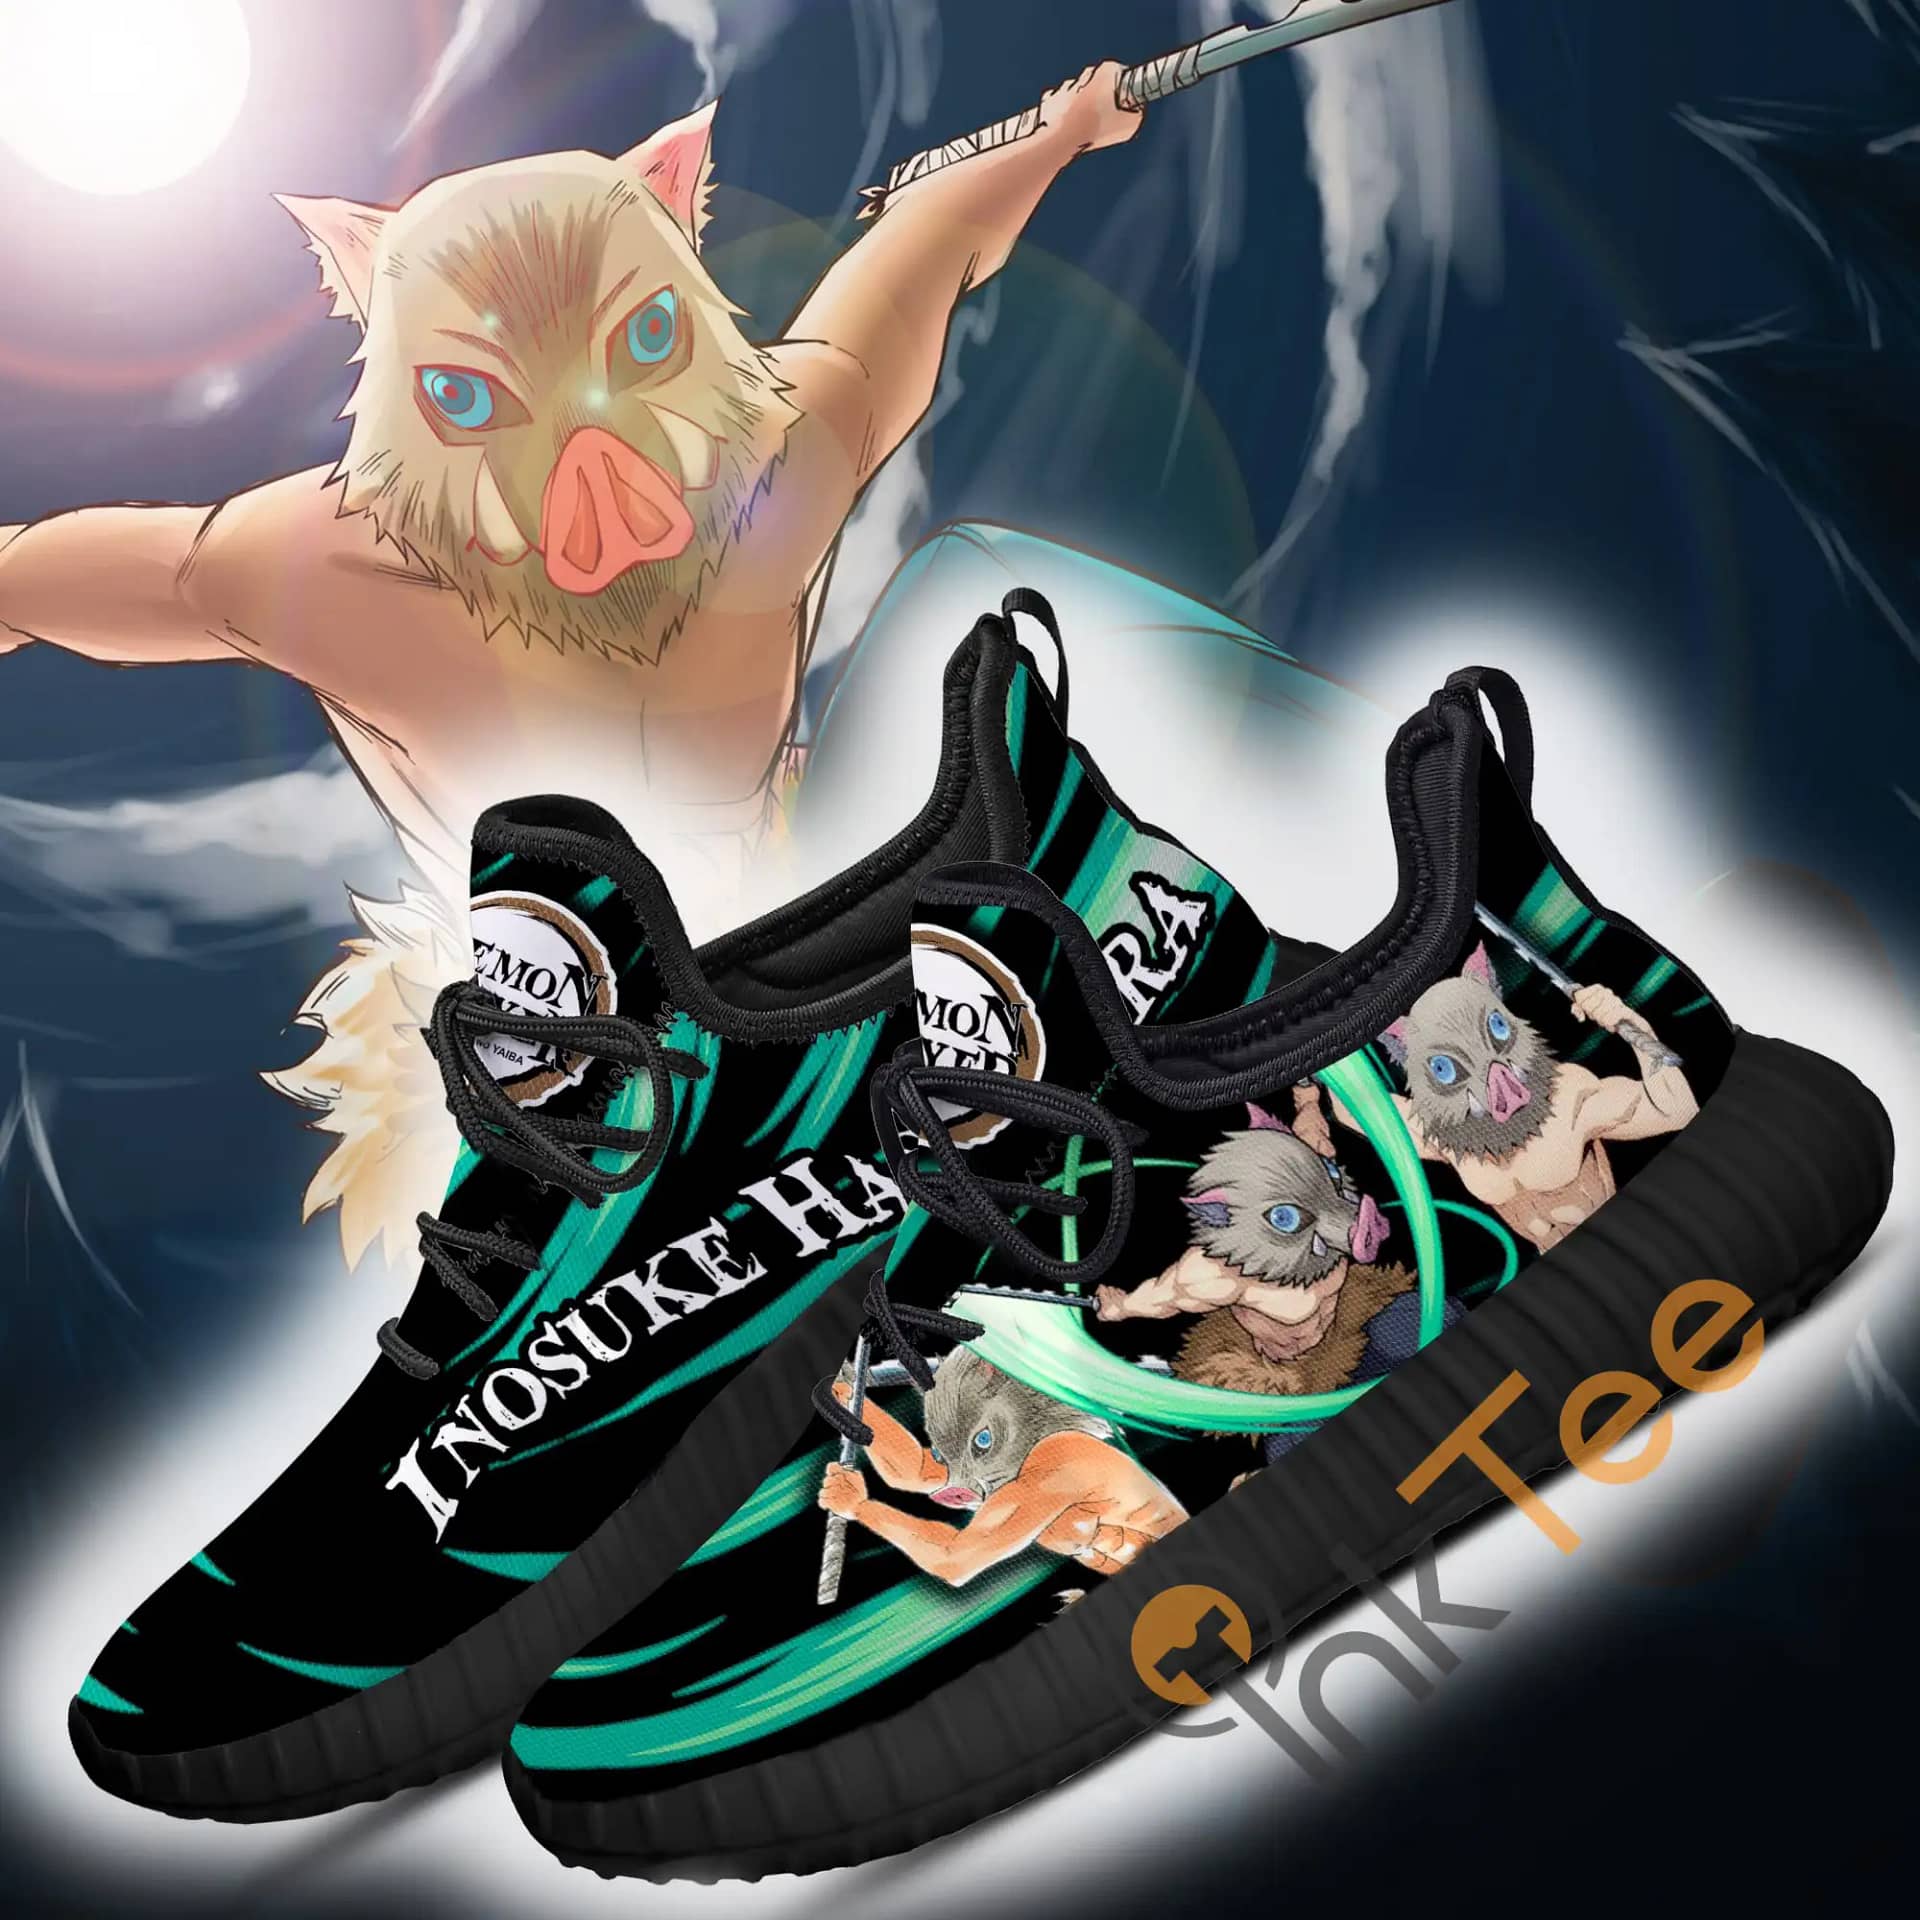 Demon Slayer Inosuke Hashibira Custom Anime Amazon Reze Shoes